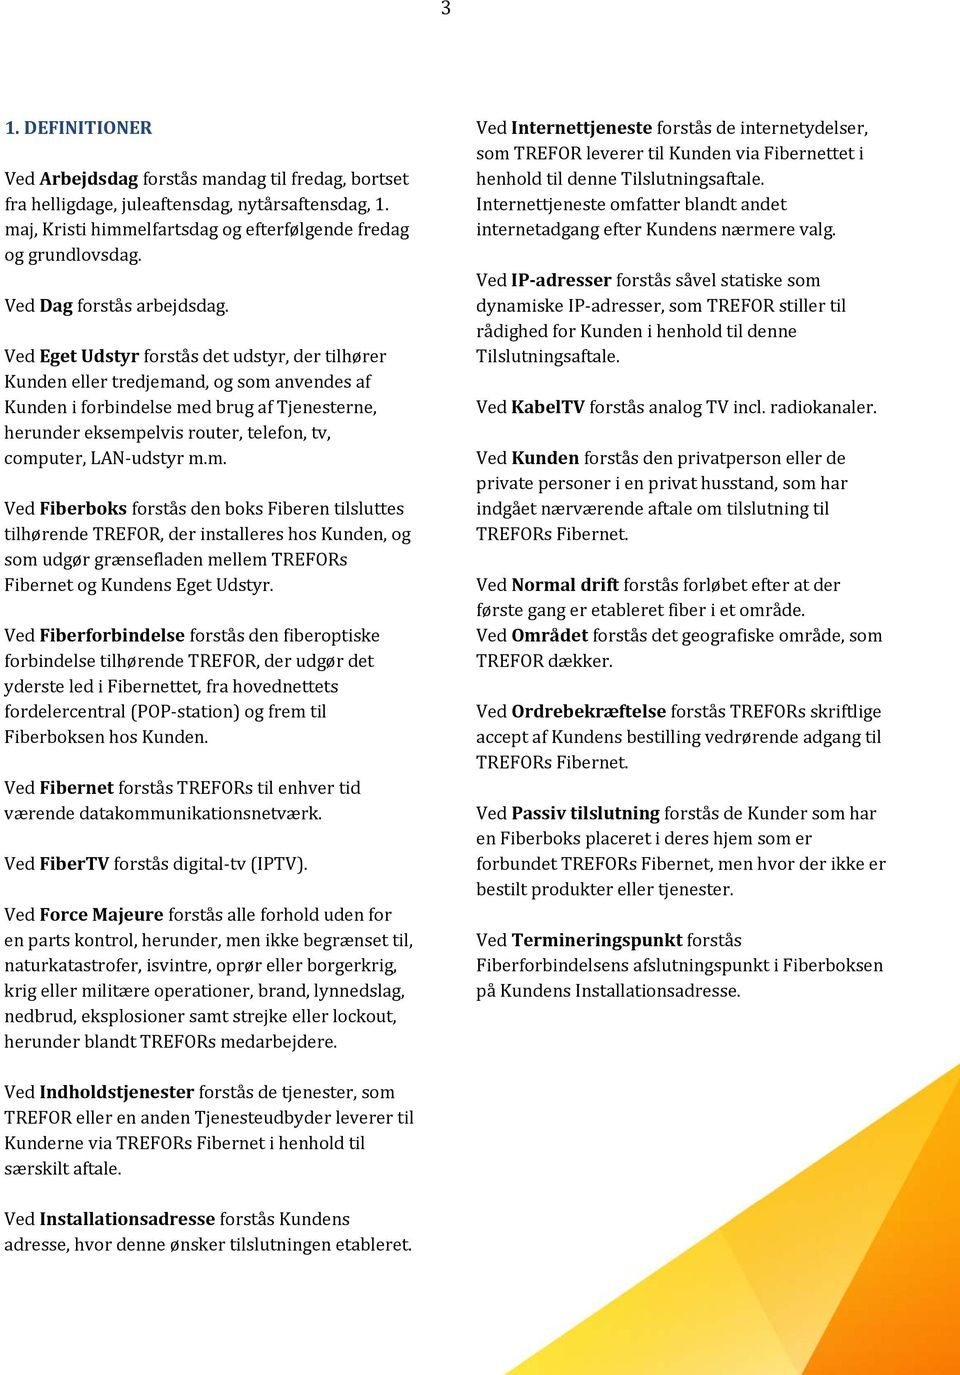 TREFOR BREDBÅND A/S. VILKÅR FOR PRIVATKUNDER FOR TILSLUTNING  (Tilslutningsaftale) - PDF Free Download